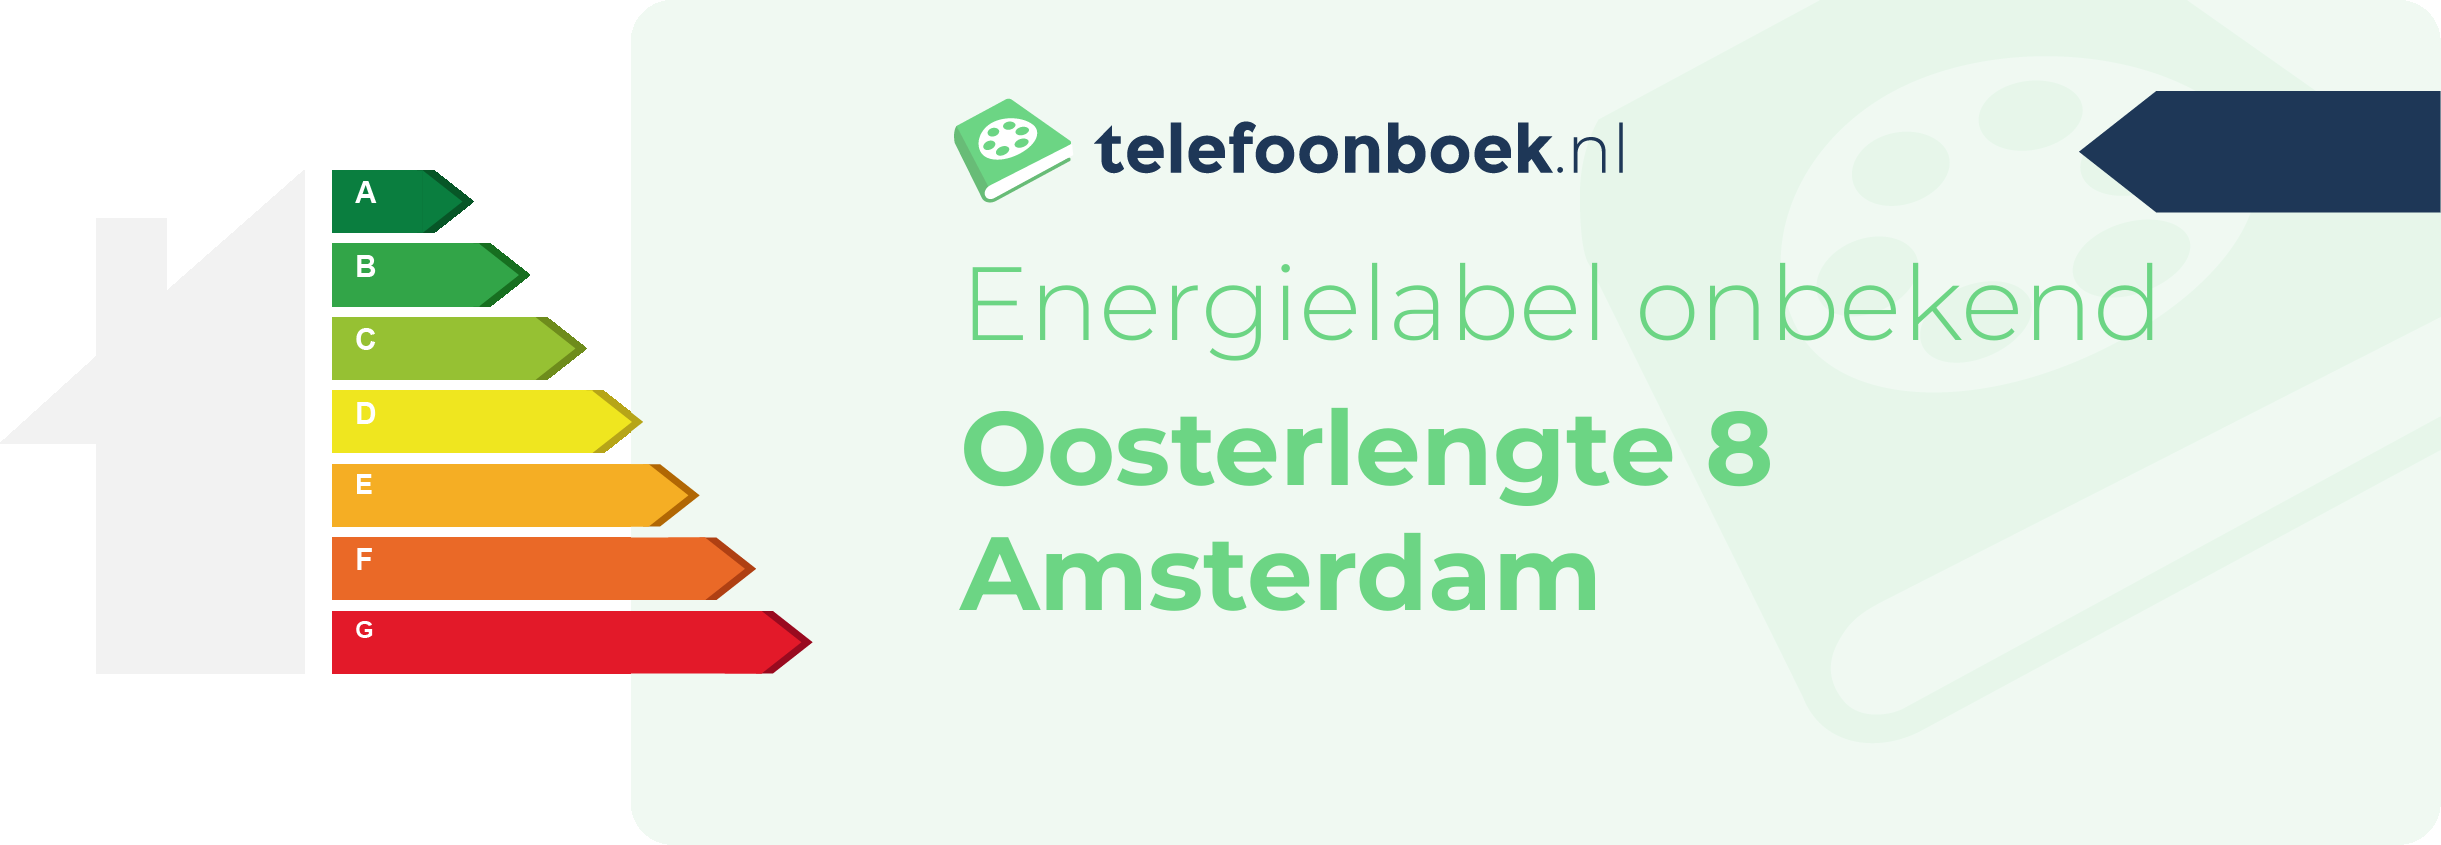 Energielabel Oosterlengte 8 Amsterdam